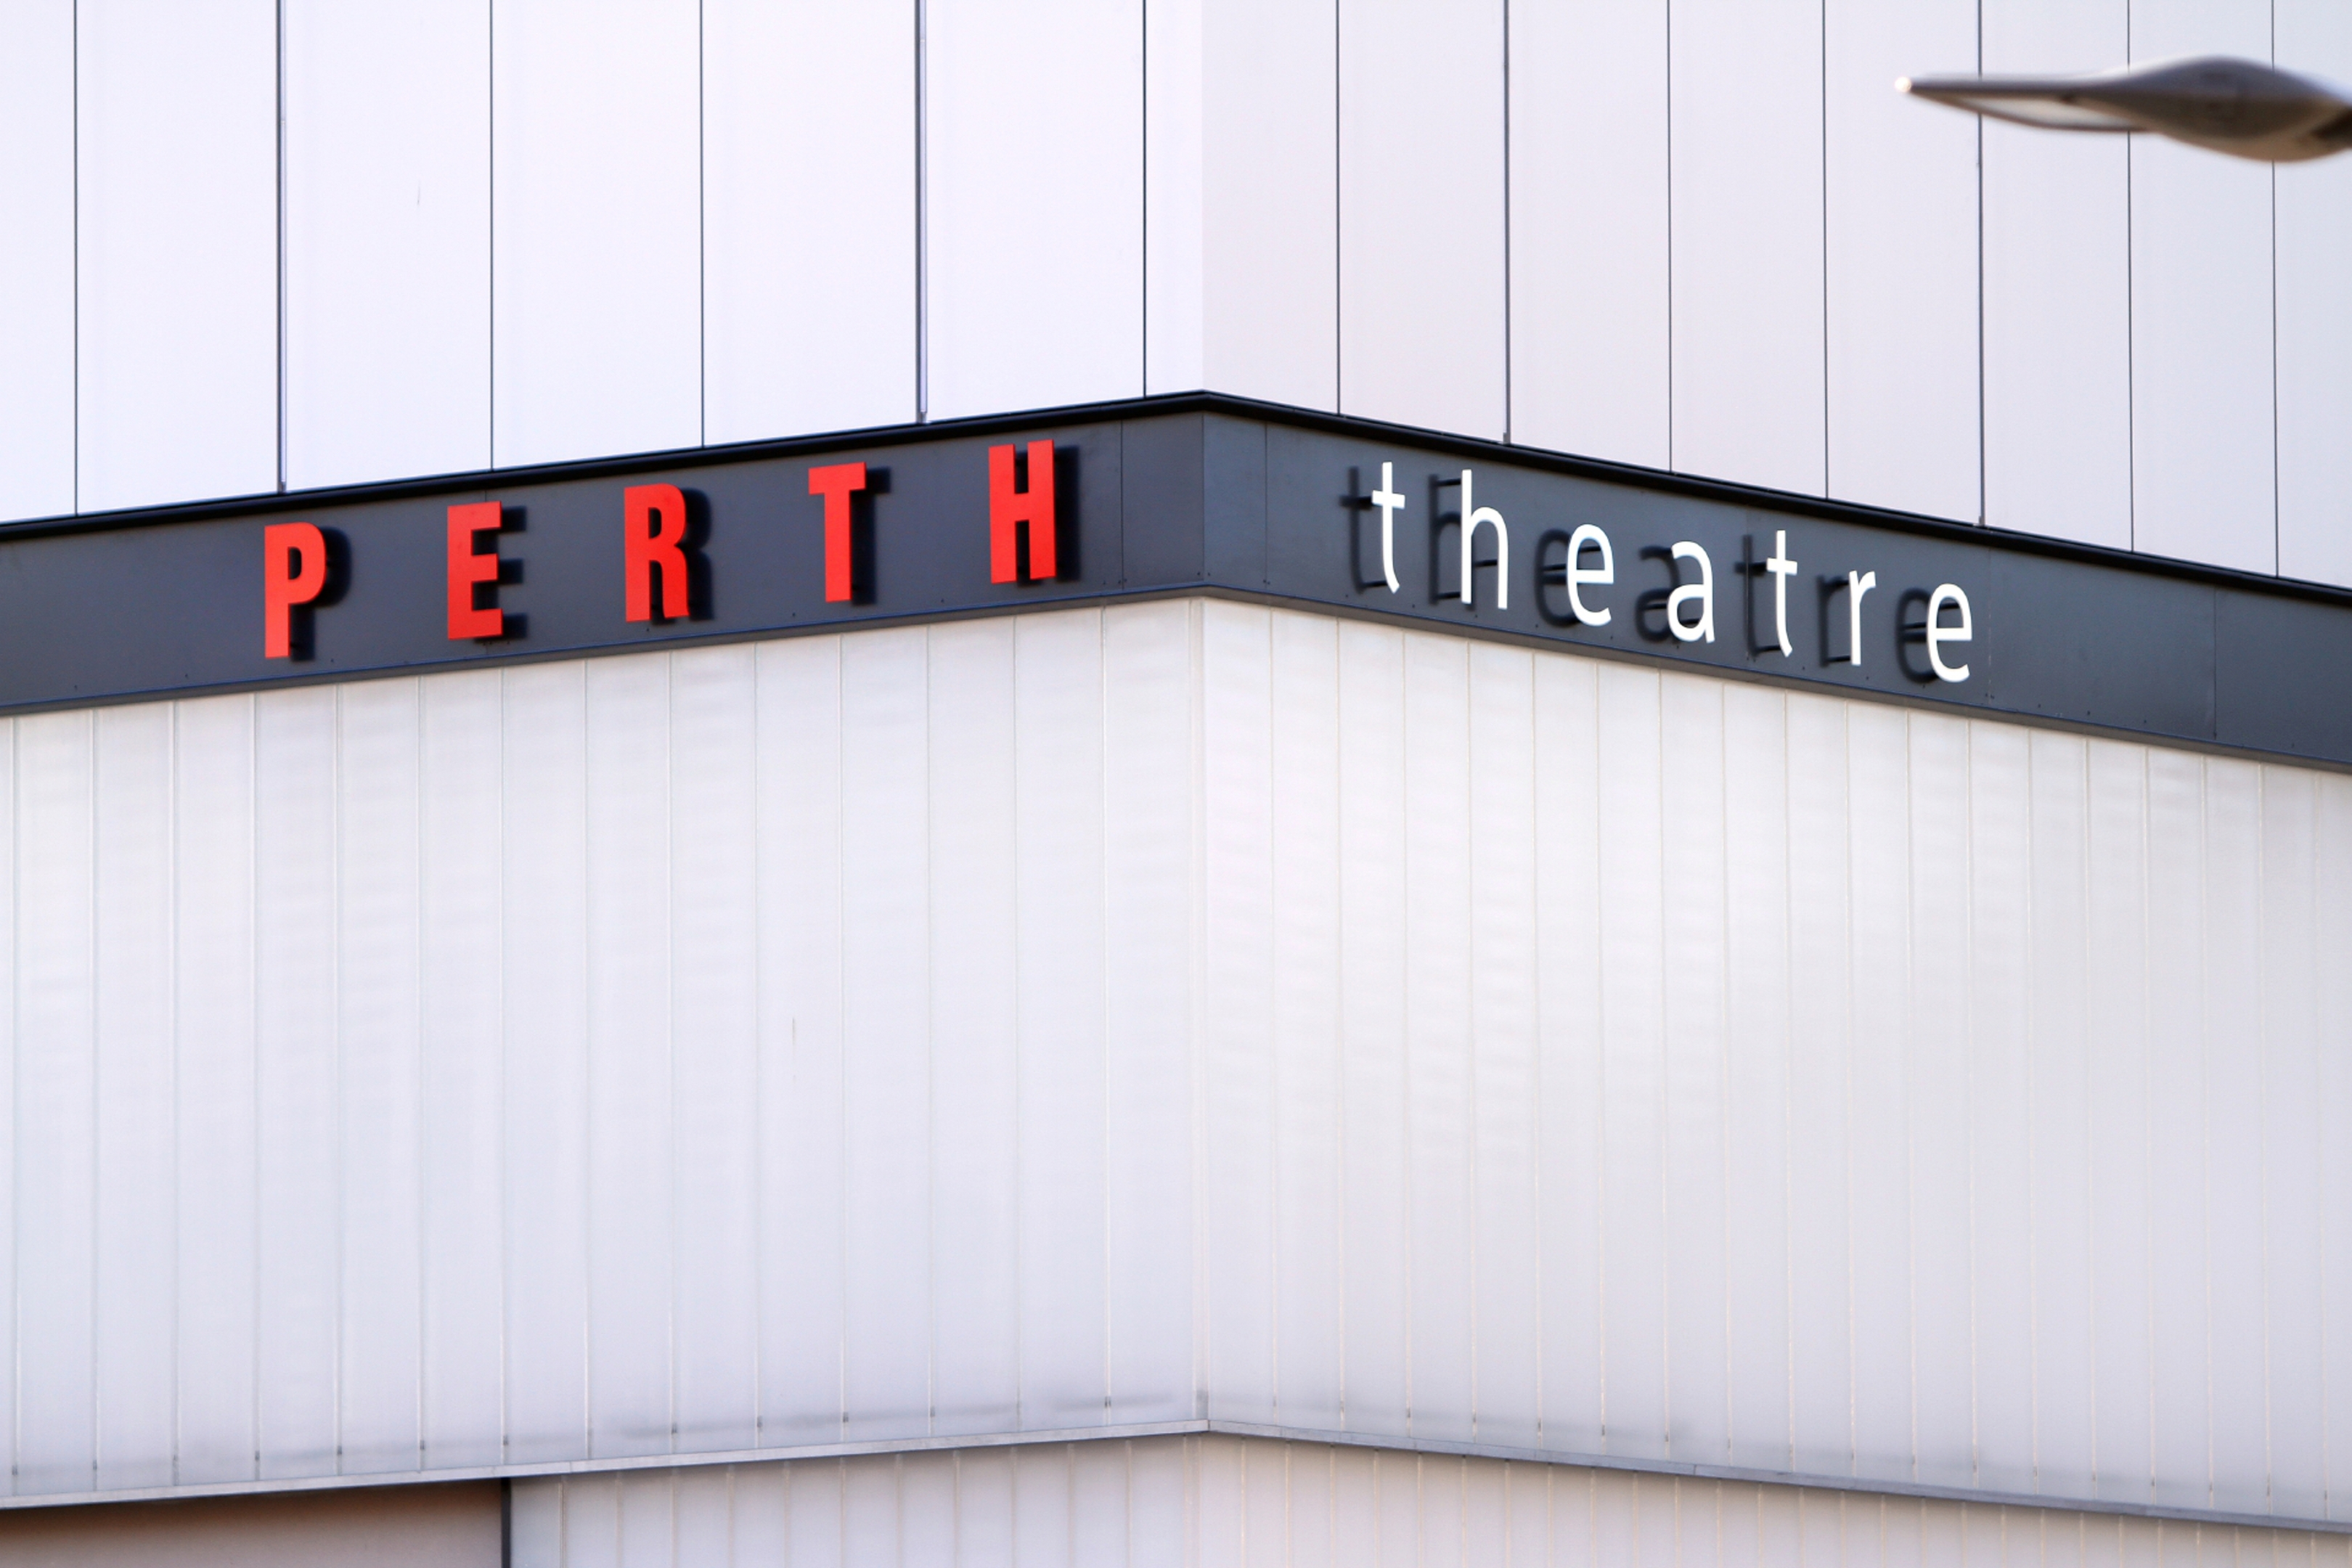 Perth Theatre has a new look.